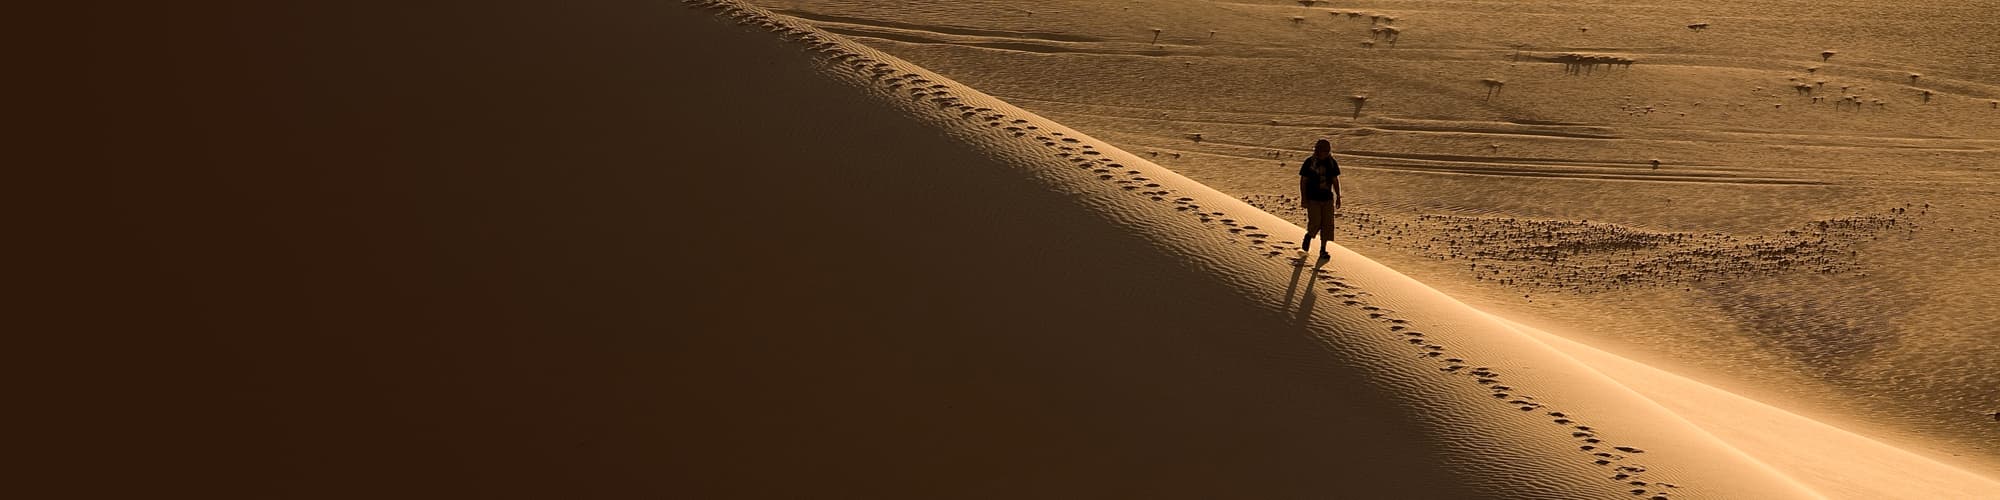 Randonnée avec chameau Mauritanie © MOIRENC Camille / hemis.fr